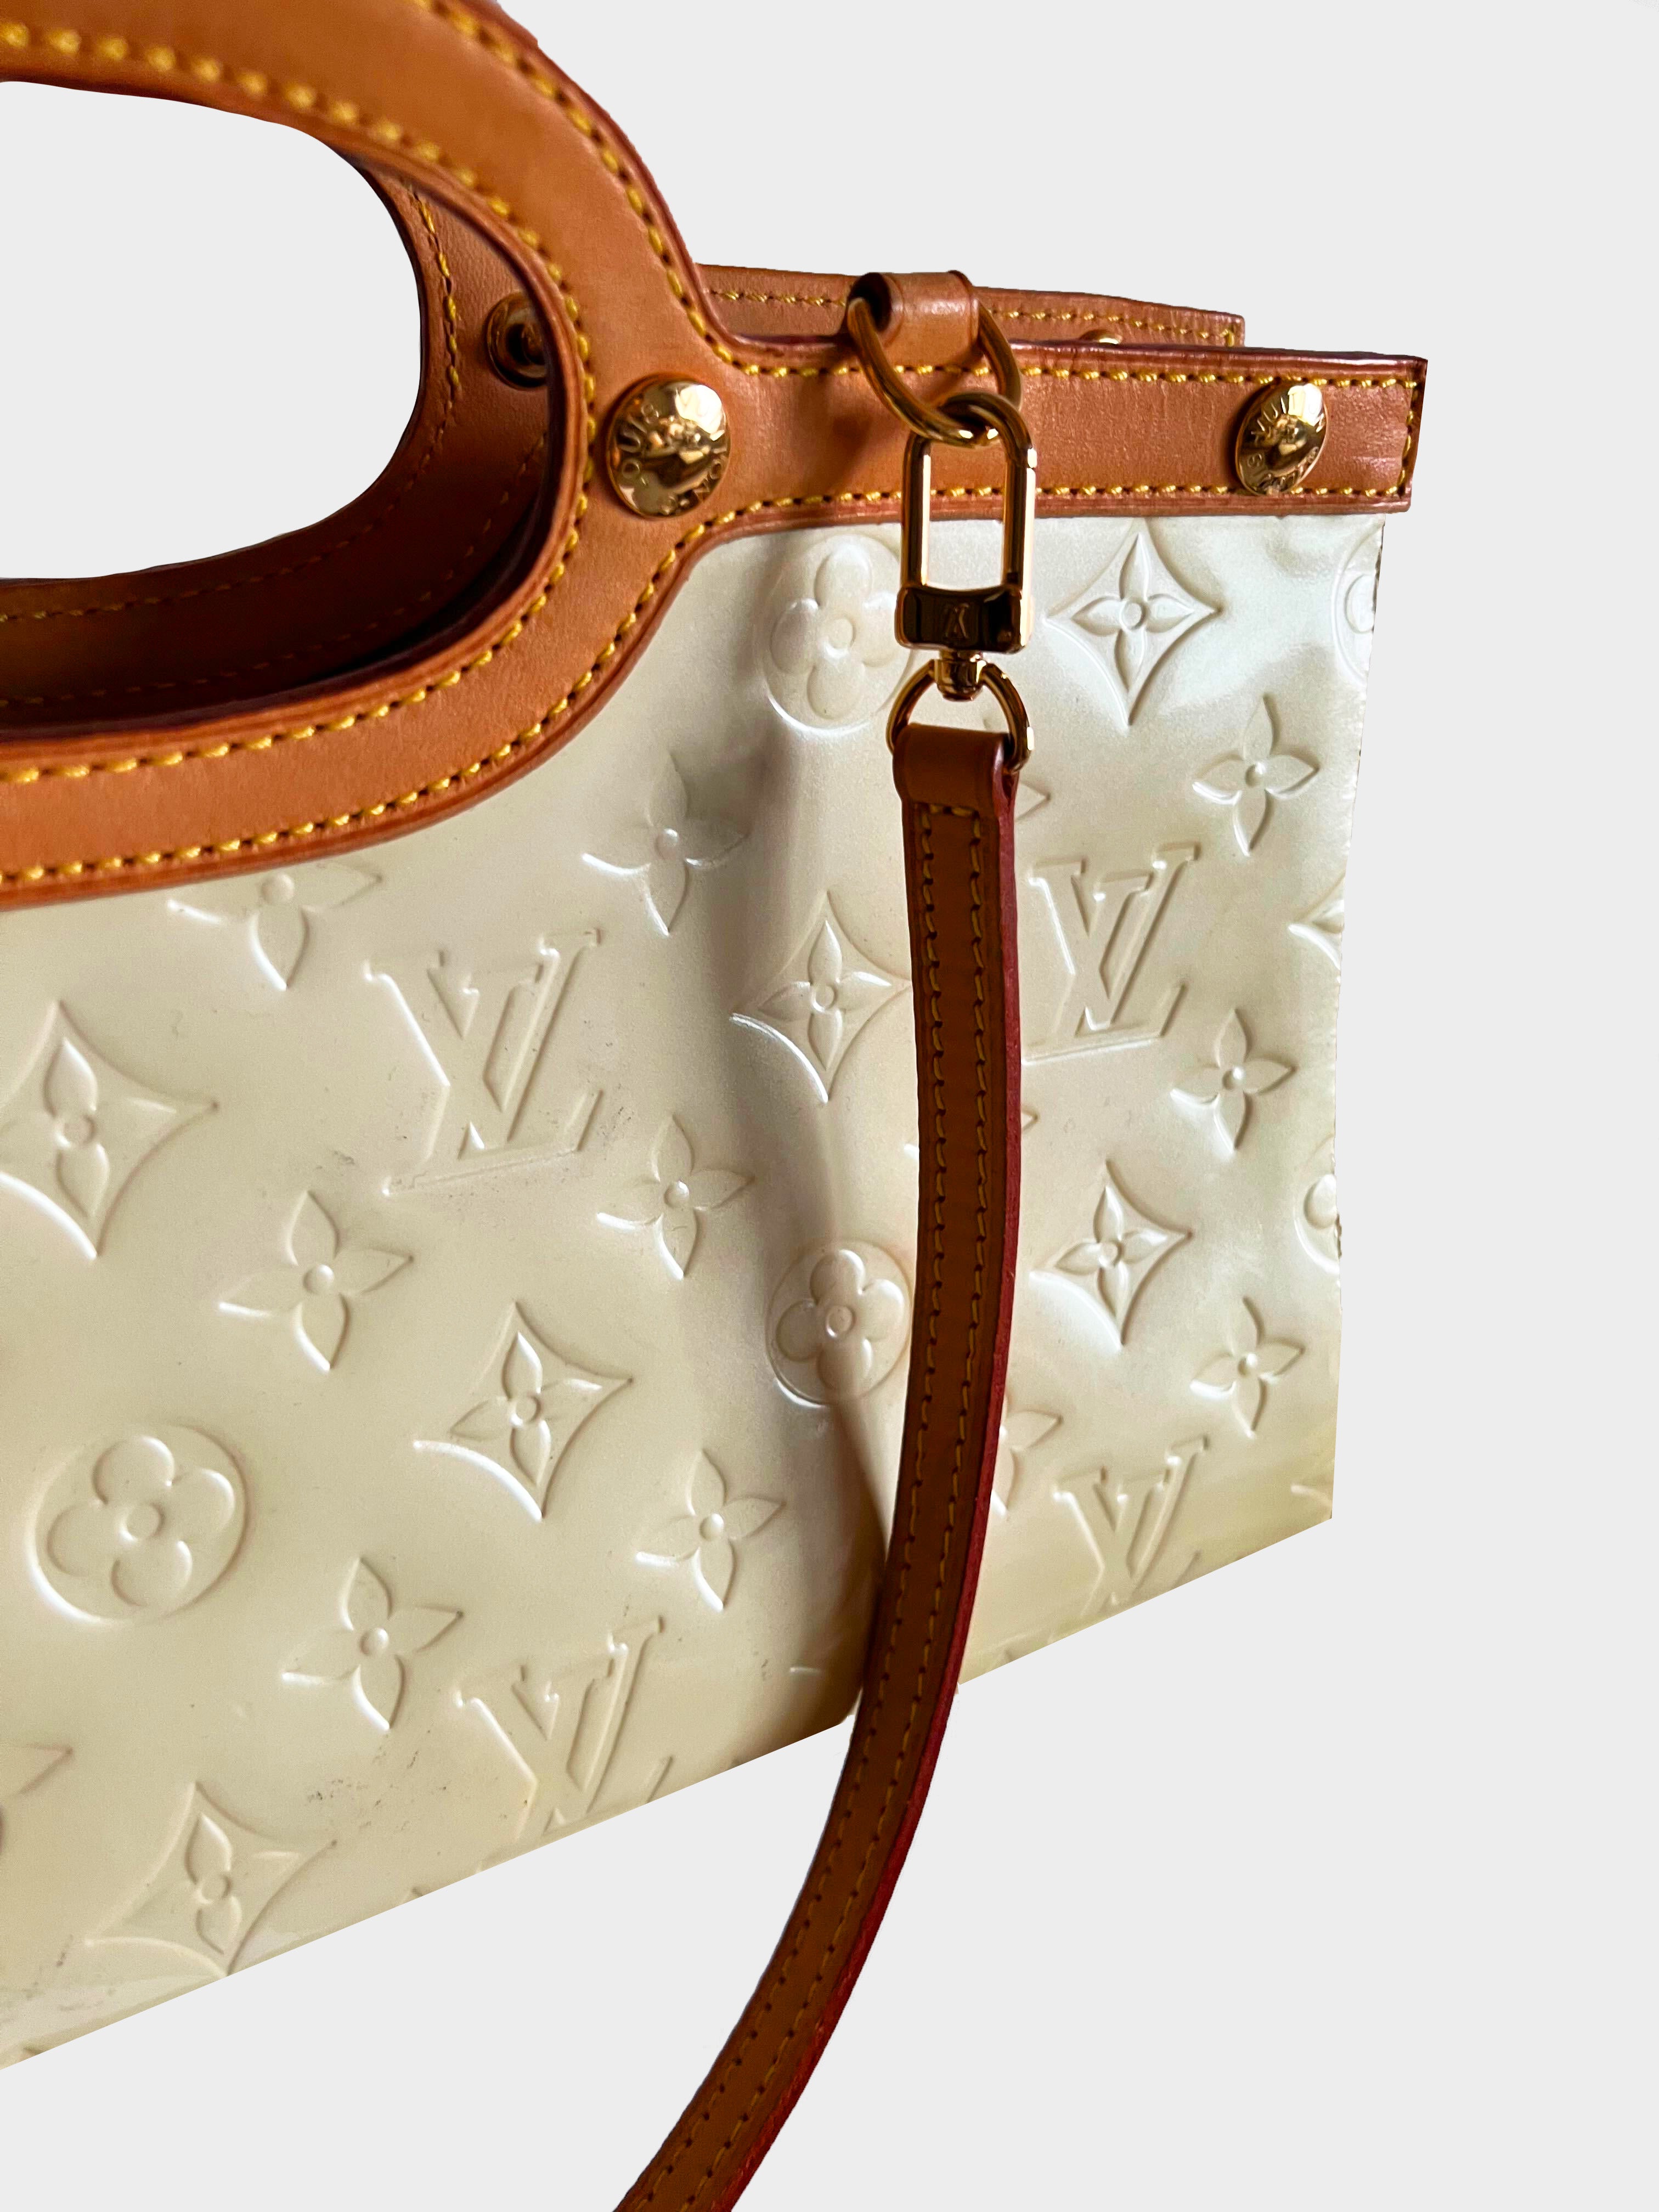 Louis Vuitton Roxbury Drive Monogram Vernis Leather Shoulder Bag on SALE